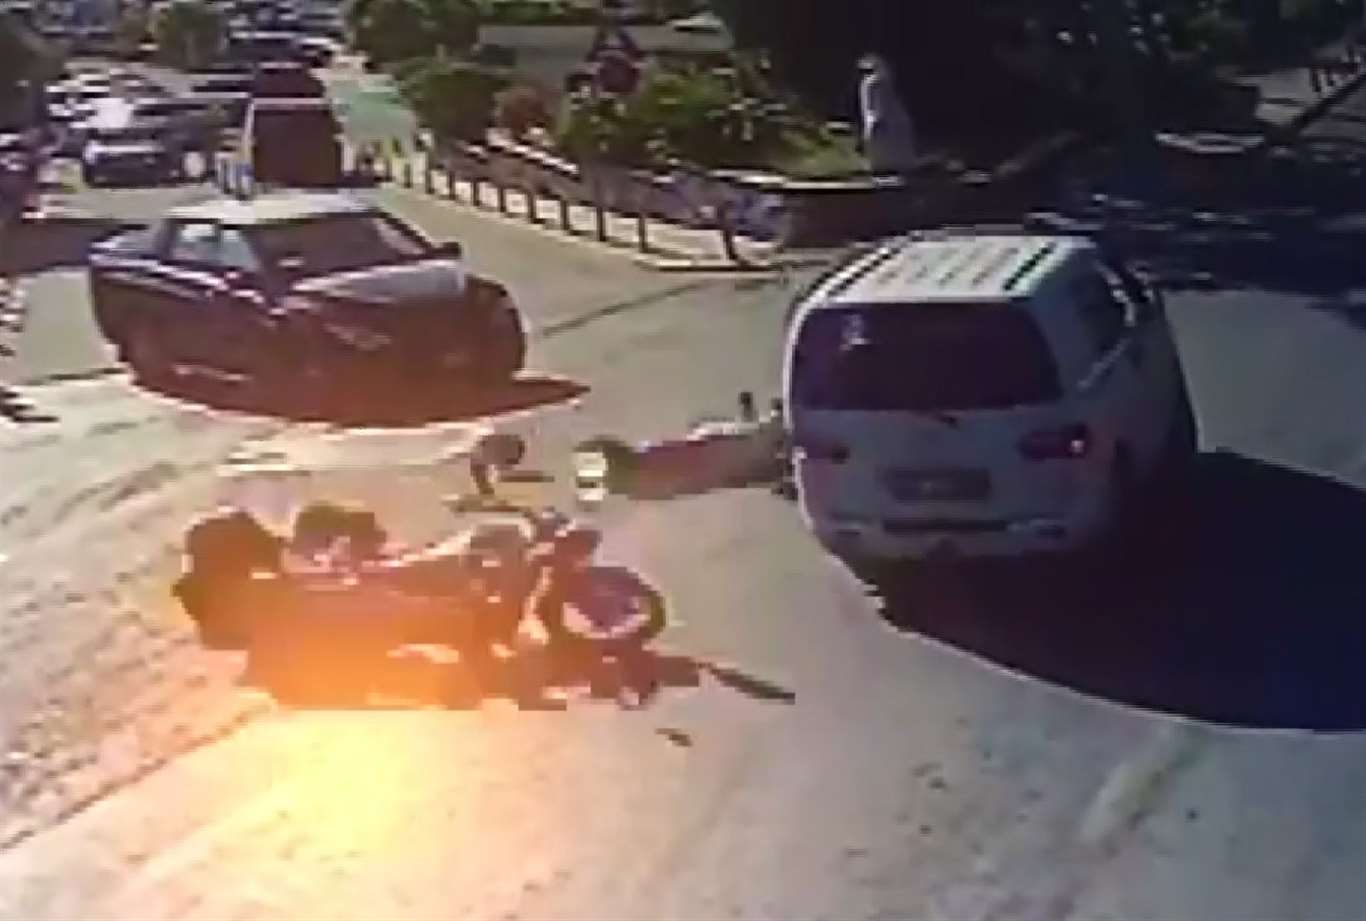       Motosiklet ile minibüs çarpıştı: 1 ölü, 1 yaralı haberi